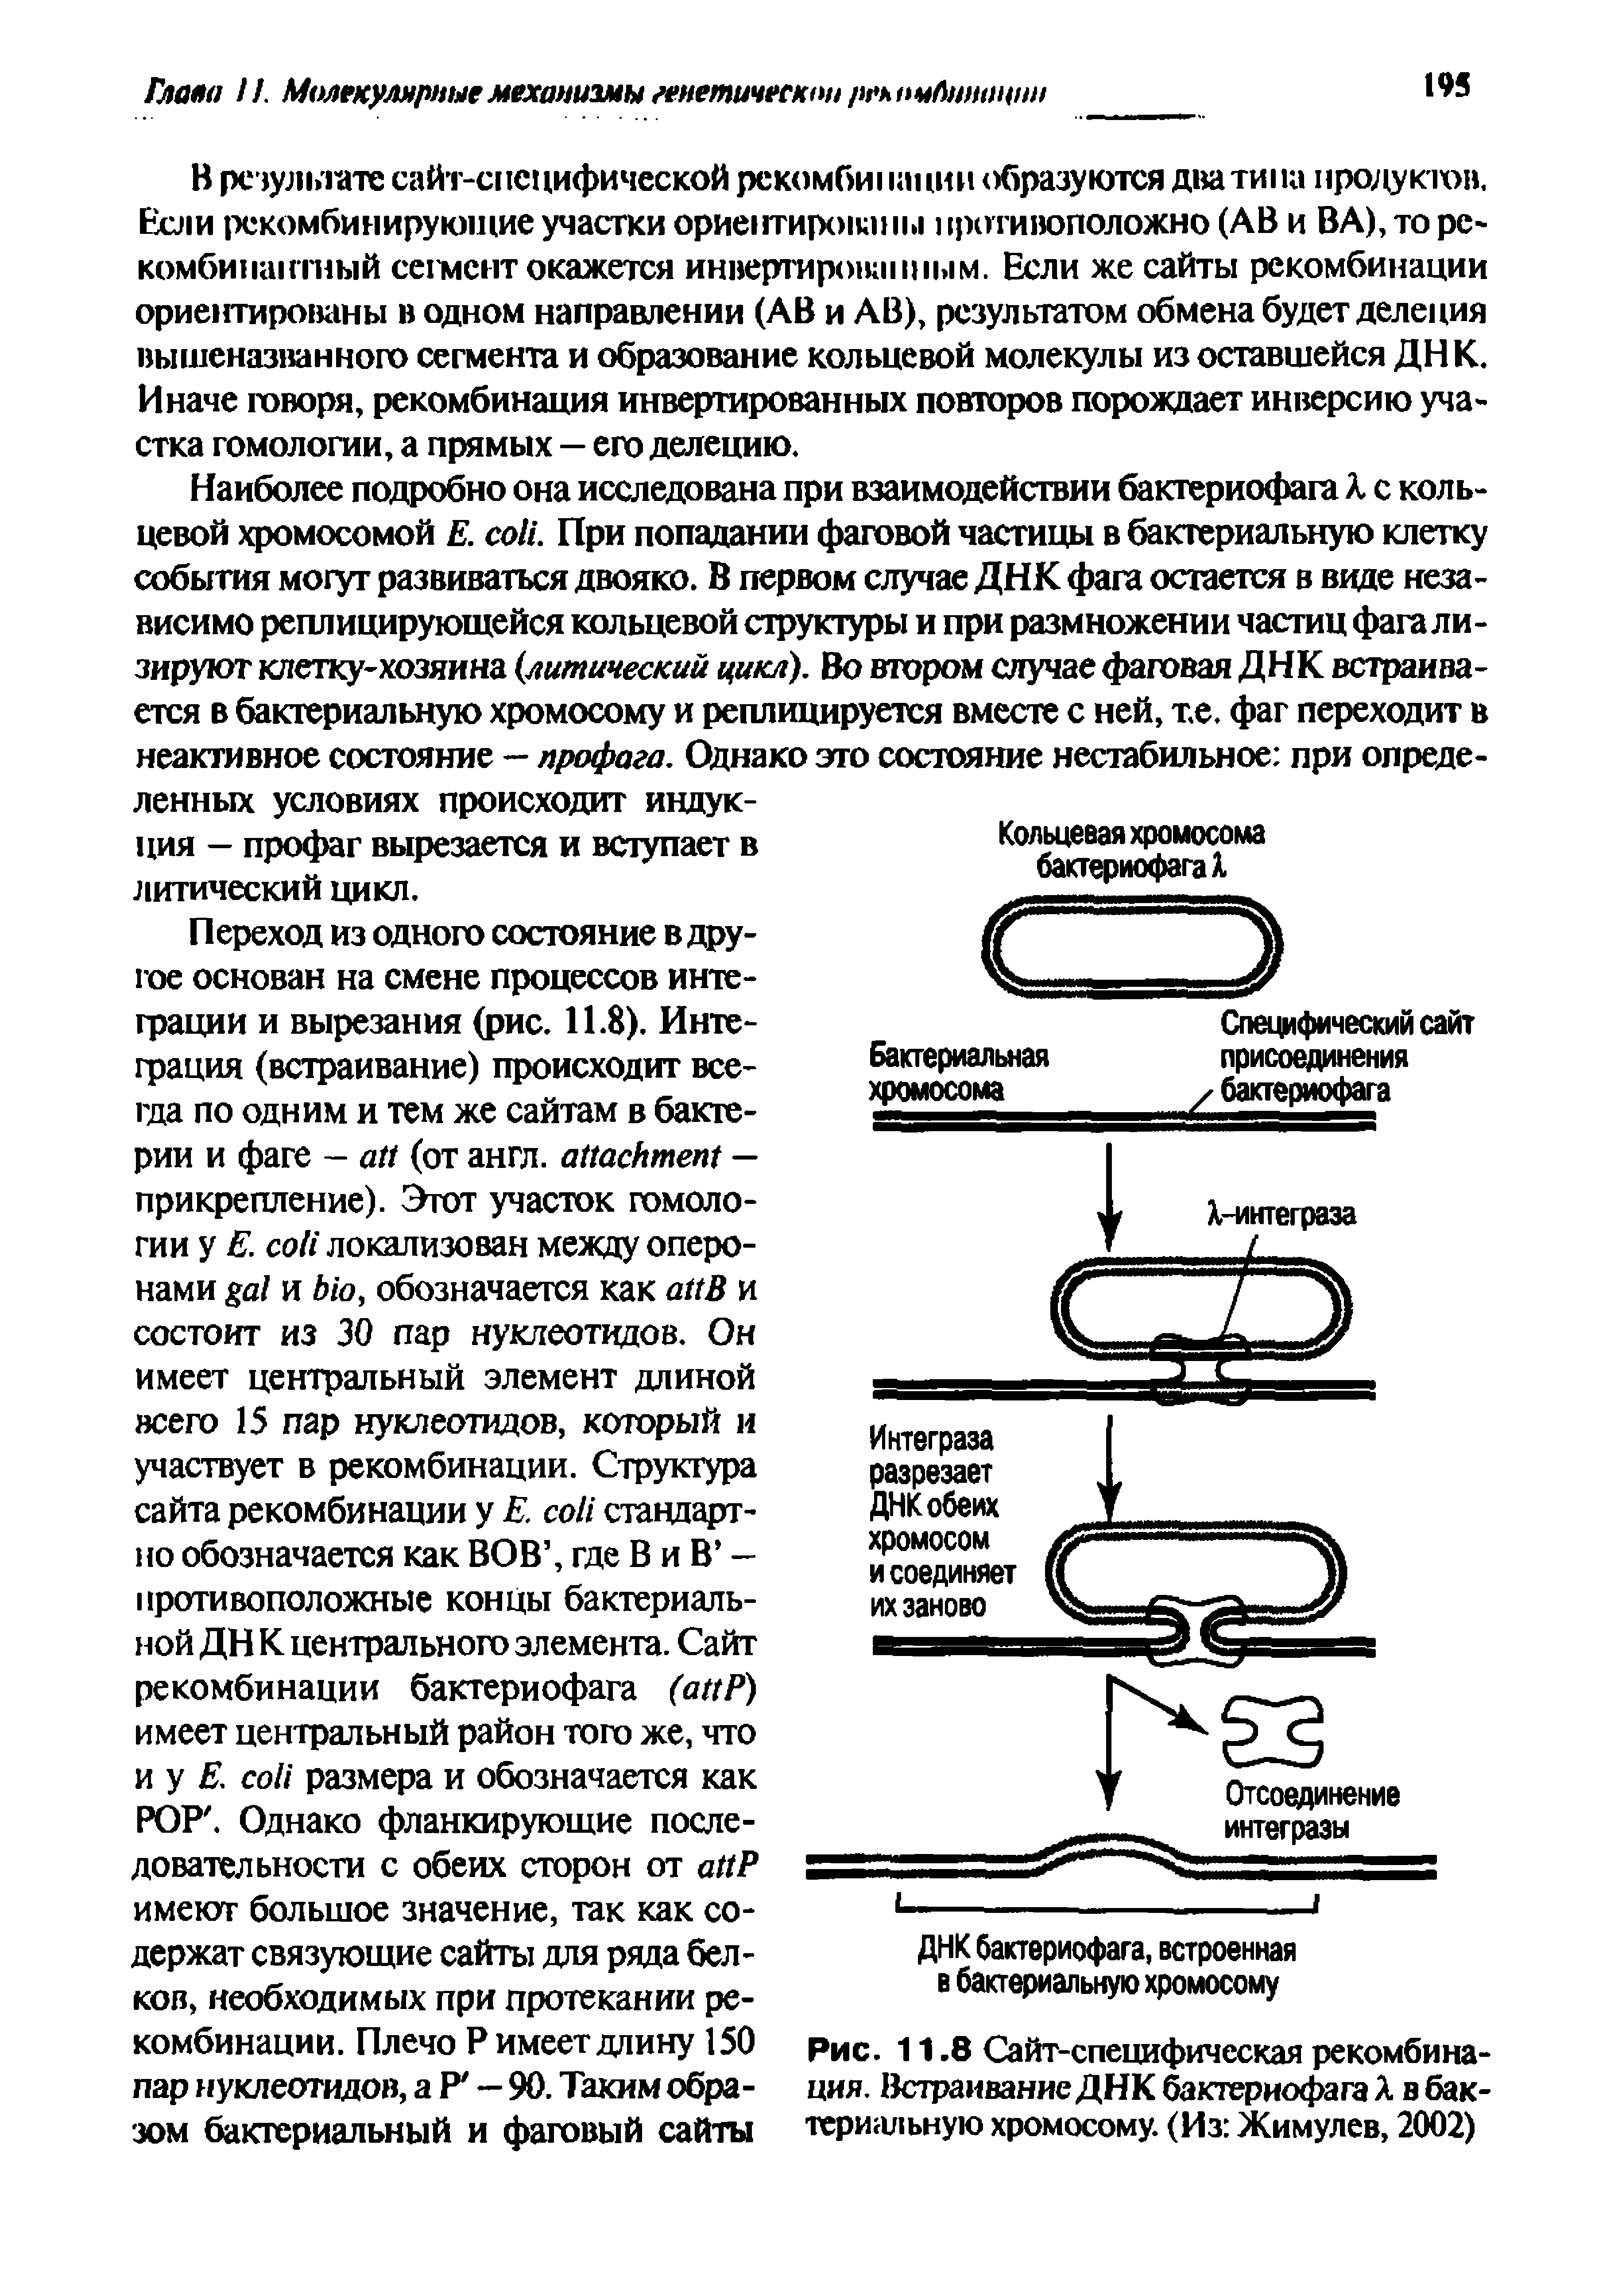 Рис. 11.8 Сайт-специфическая рекомбинация. Встраивание ДНК бактериофага А в бактериальную хромосому. (Из Жимулев, 2002)...